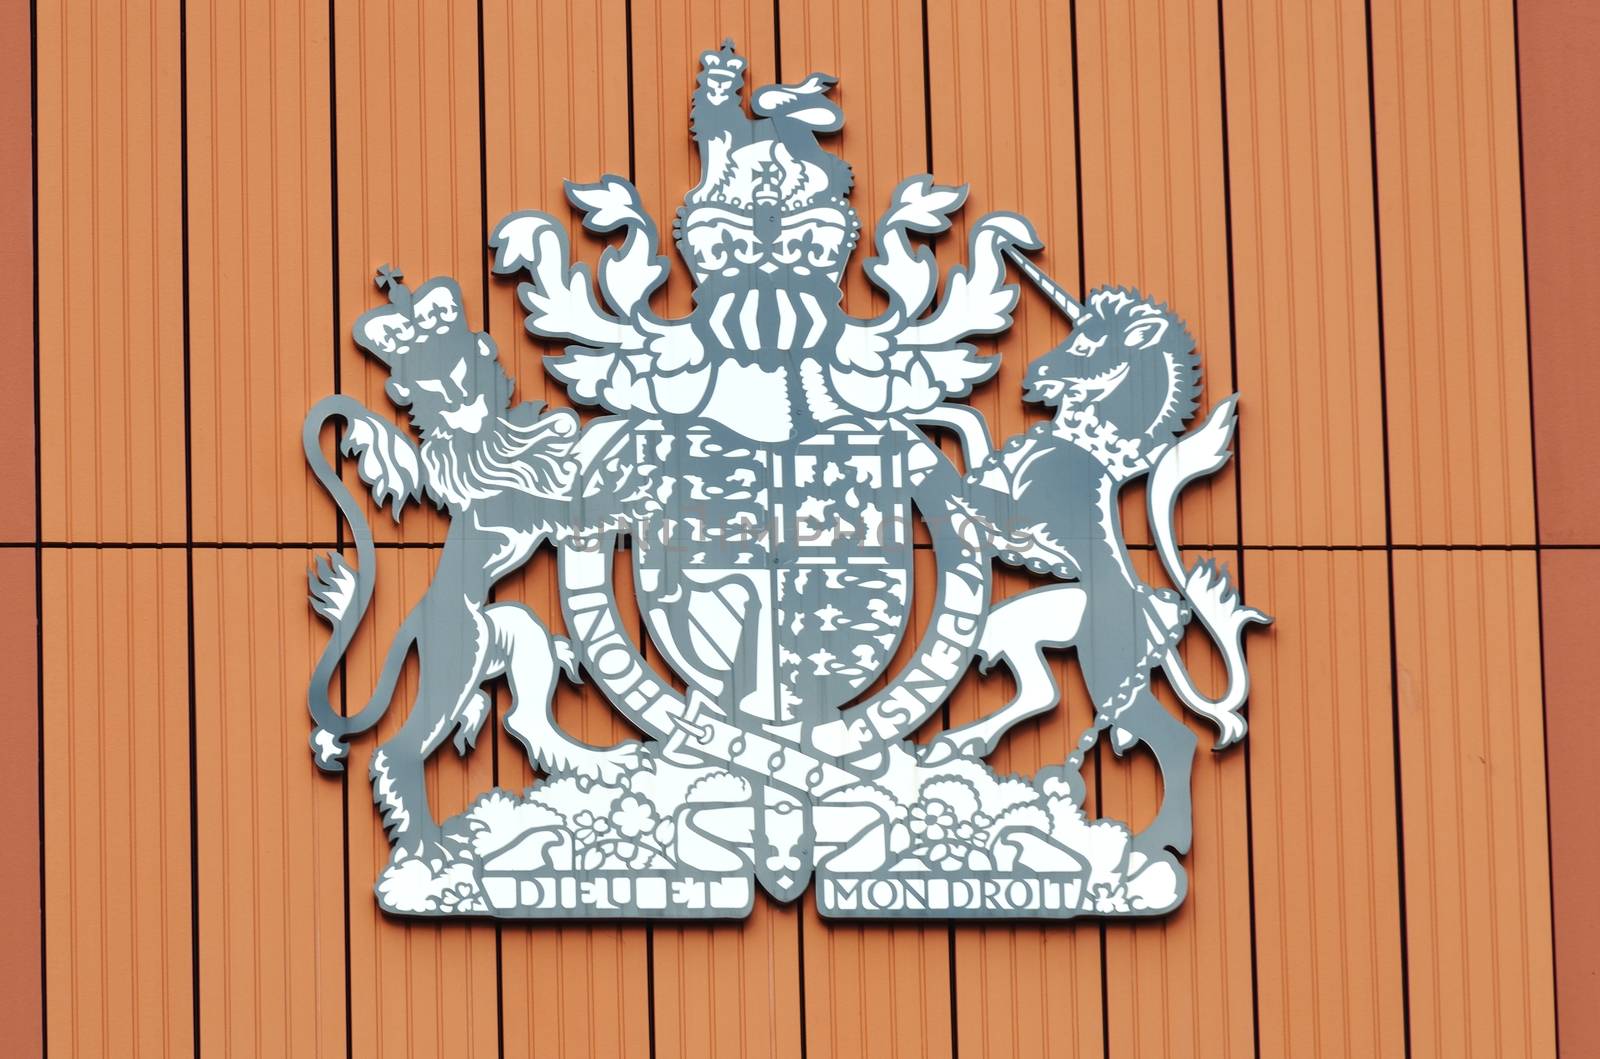 British monarchy heraldic sign by pauws99